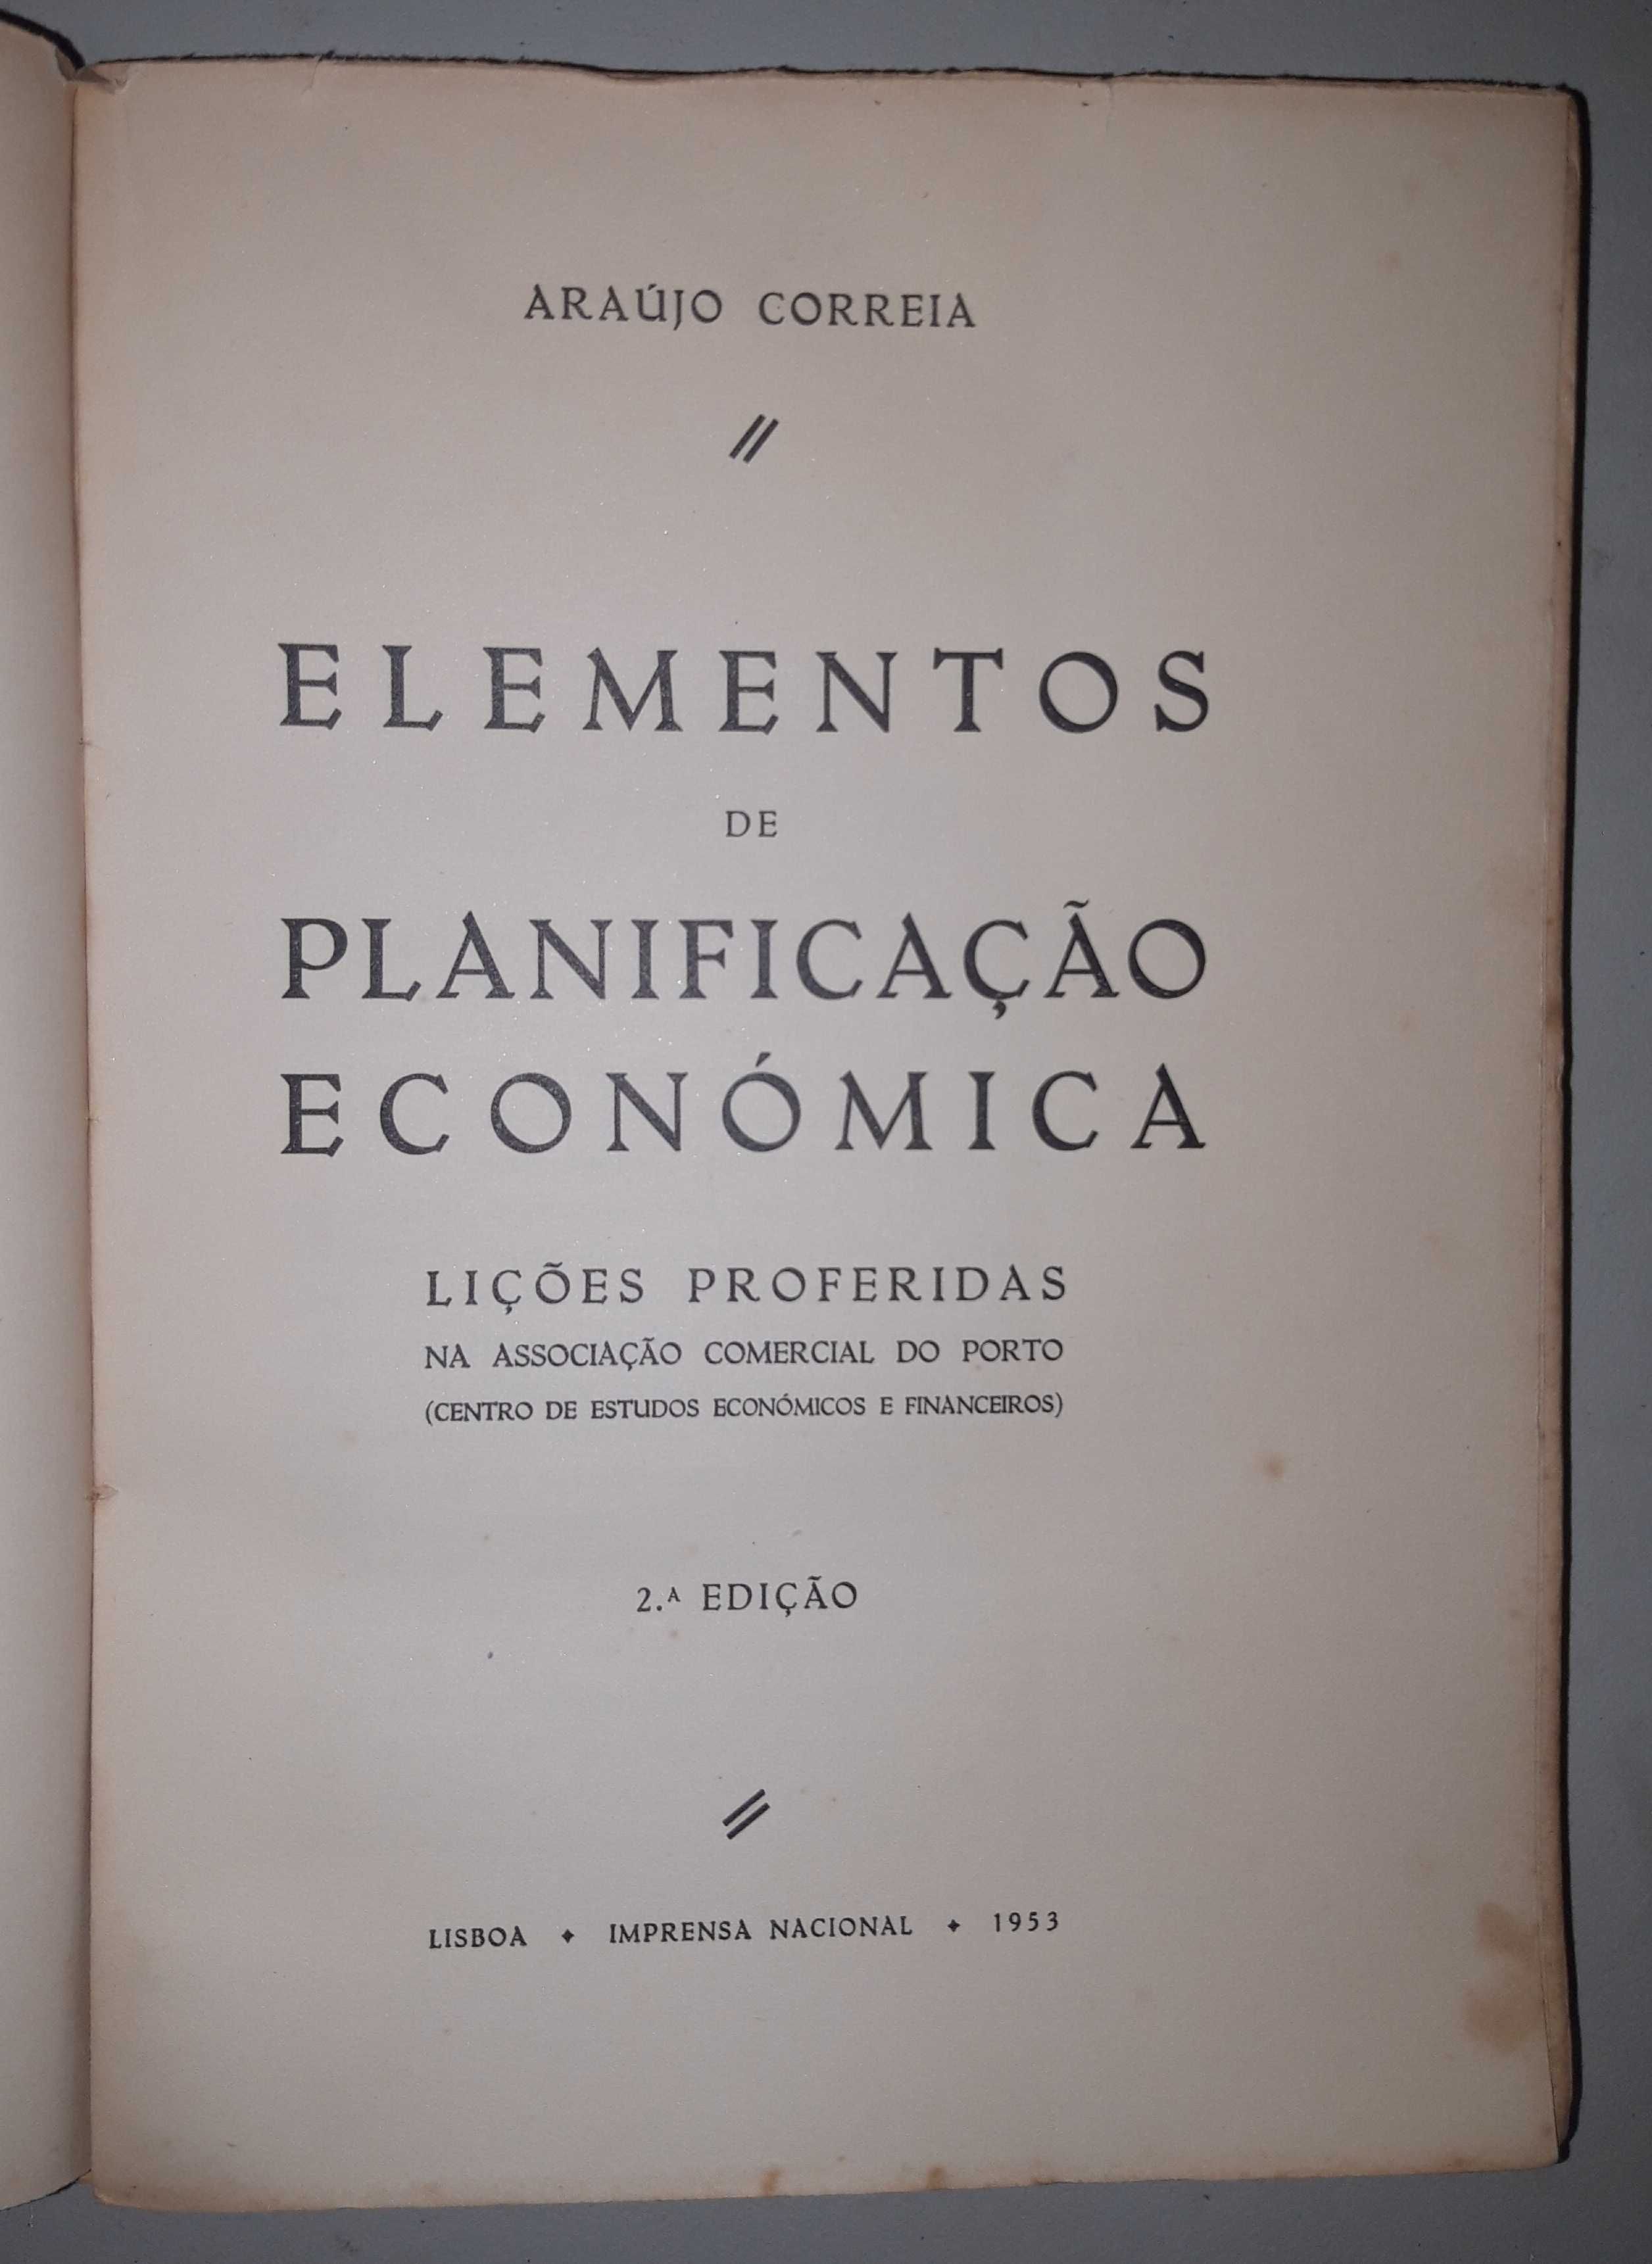 Livro Ref Par 2 - Araújo Correia - Elementos de Planificação Económica